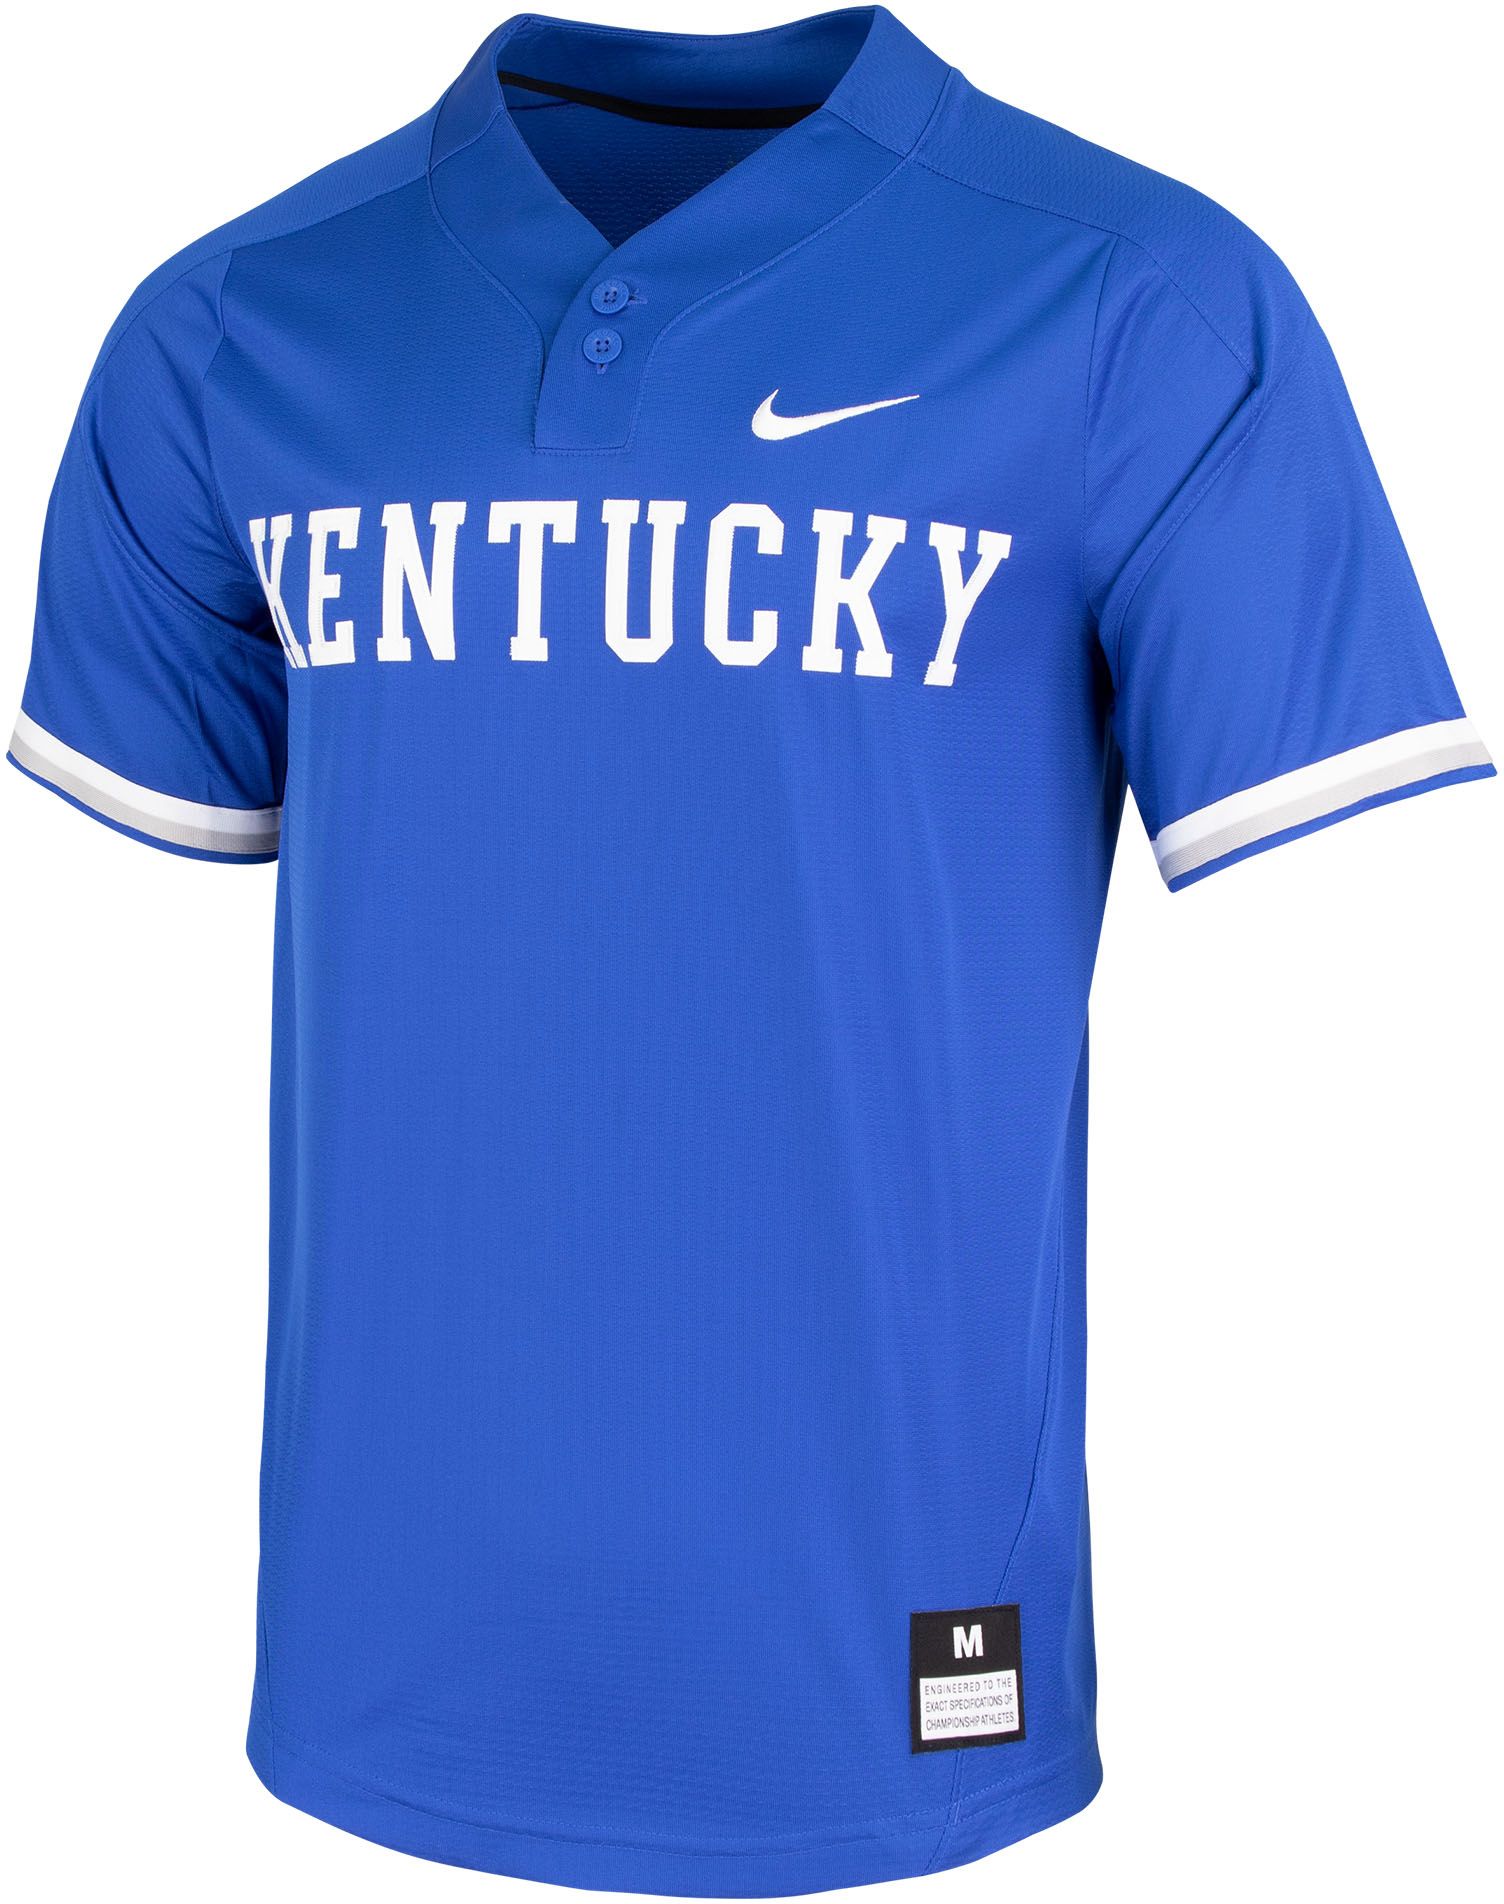 kentucky baseball jersey